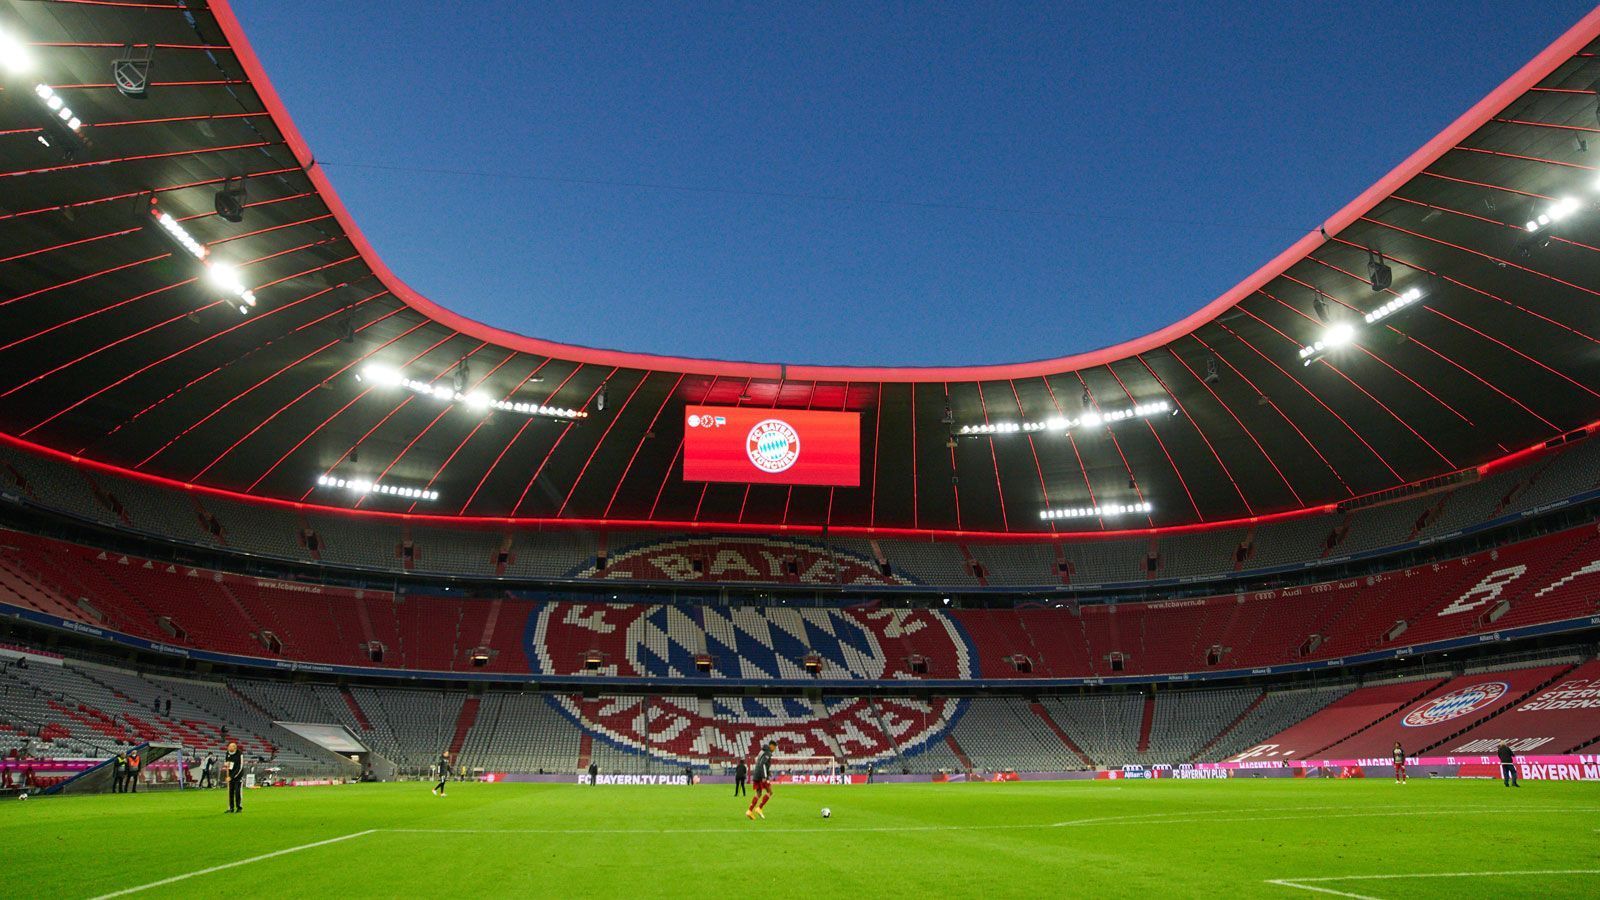 
                <strong>Bayern München - Eintracht Frankfurt</strong><br>
                 - Stadion: Allianz Arena - Kapazität: 75.000 - Zugelassene Zuschauer: 0 (in der Stadt München sind Zuschauer bis einschließlich 25. Oktober untersagt) - 7-Tage-Inzidenz: 86,8
              